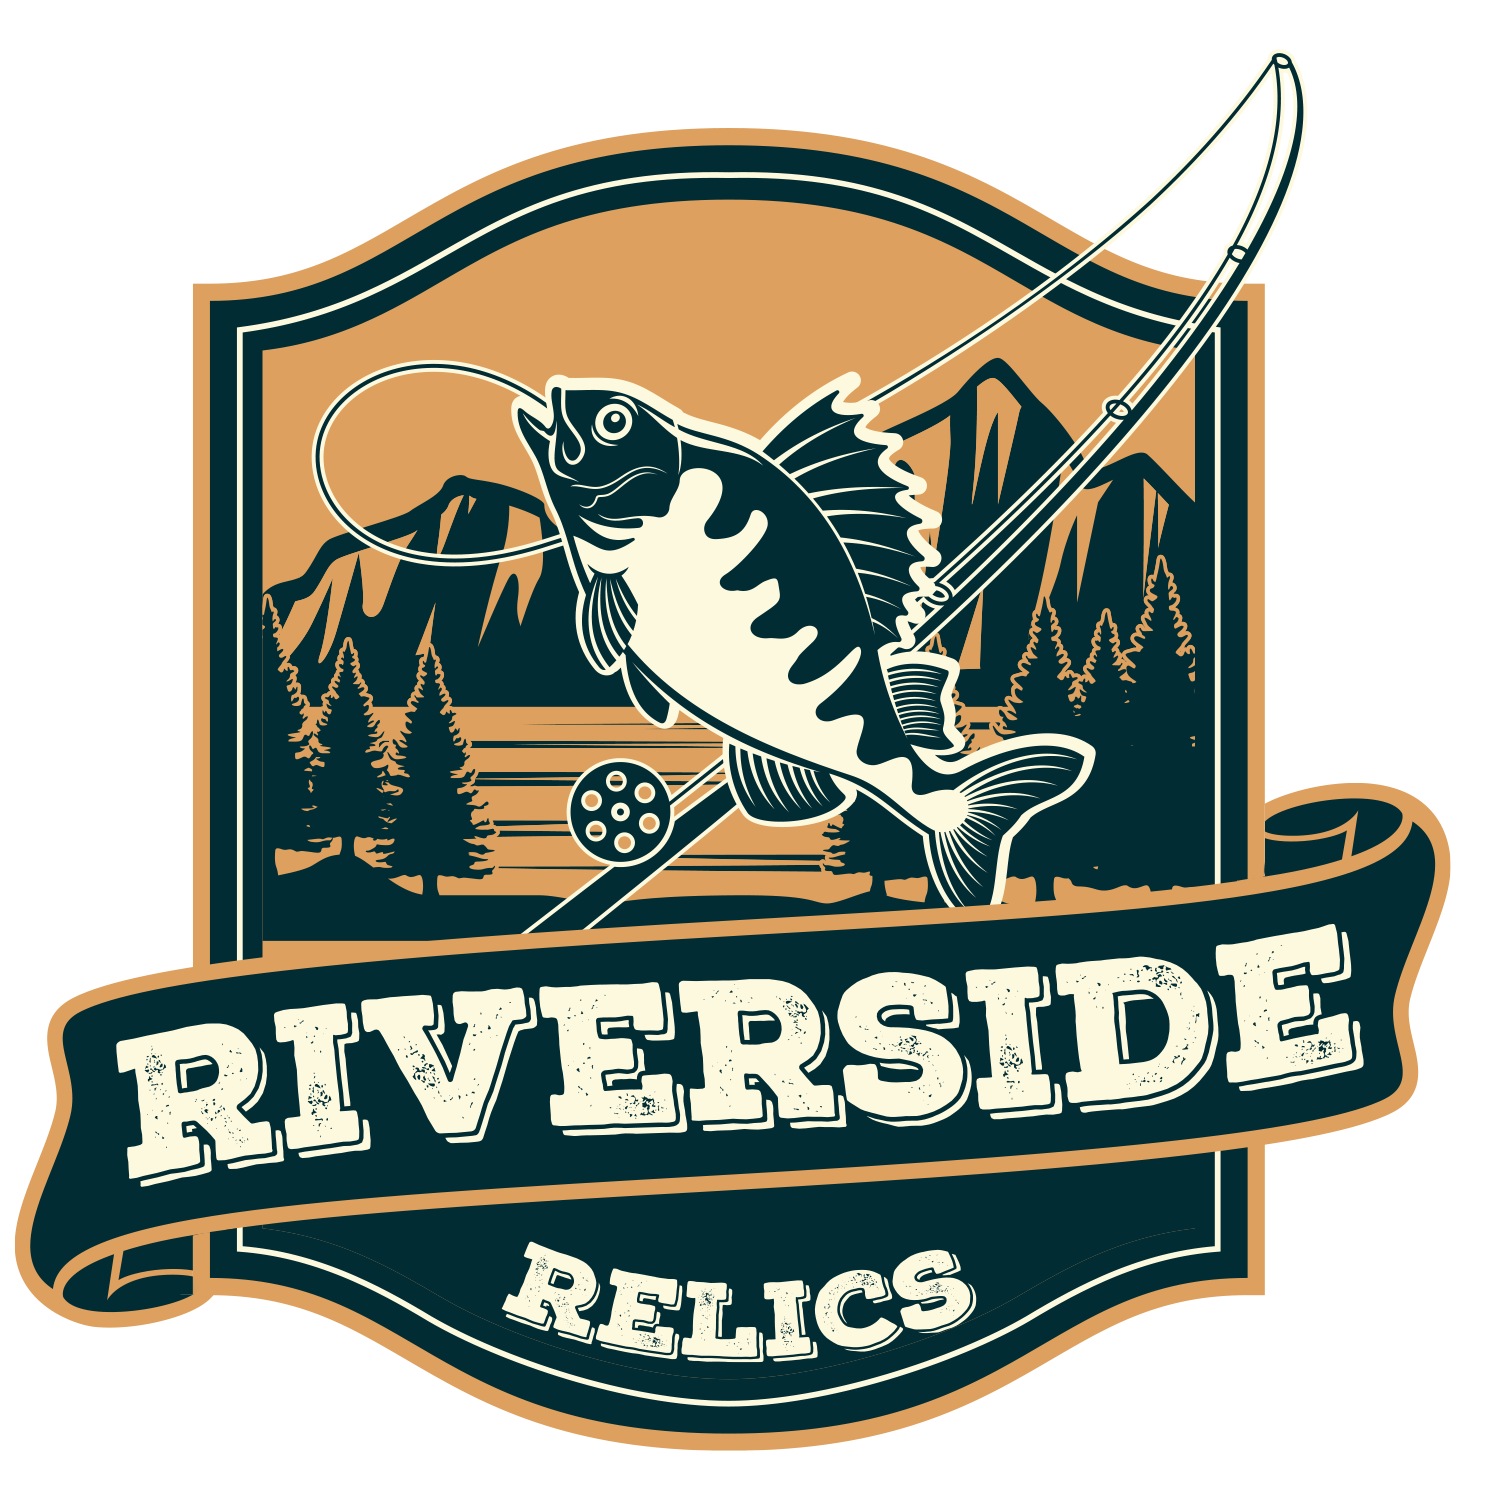 Riverside Relics Vintage Market